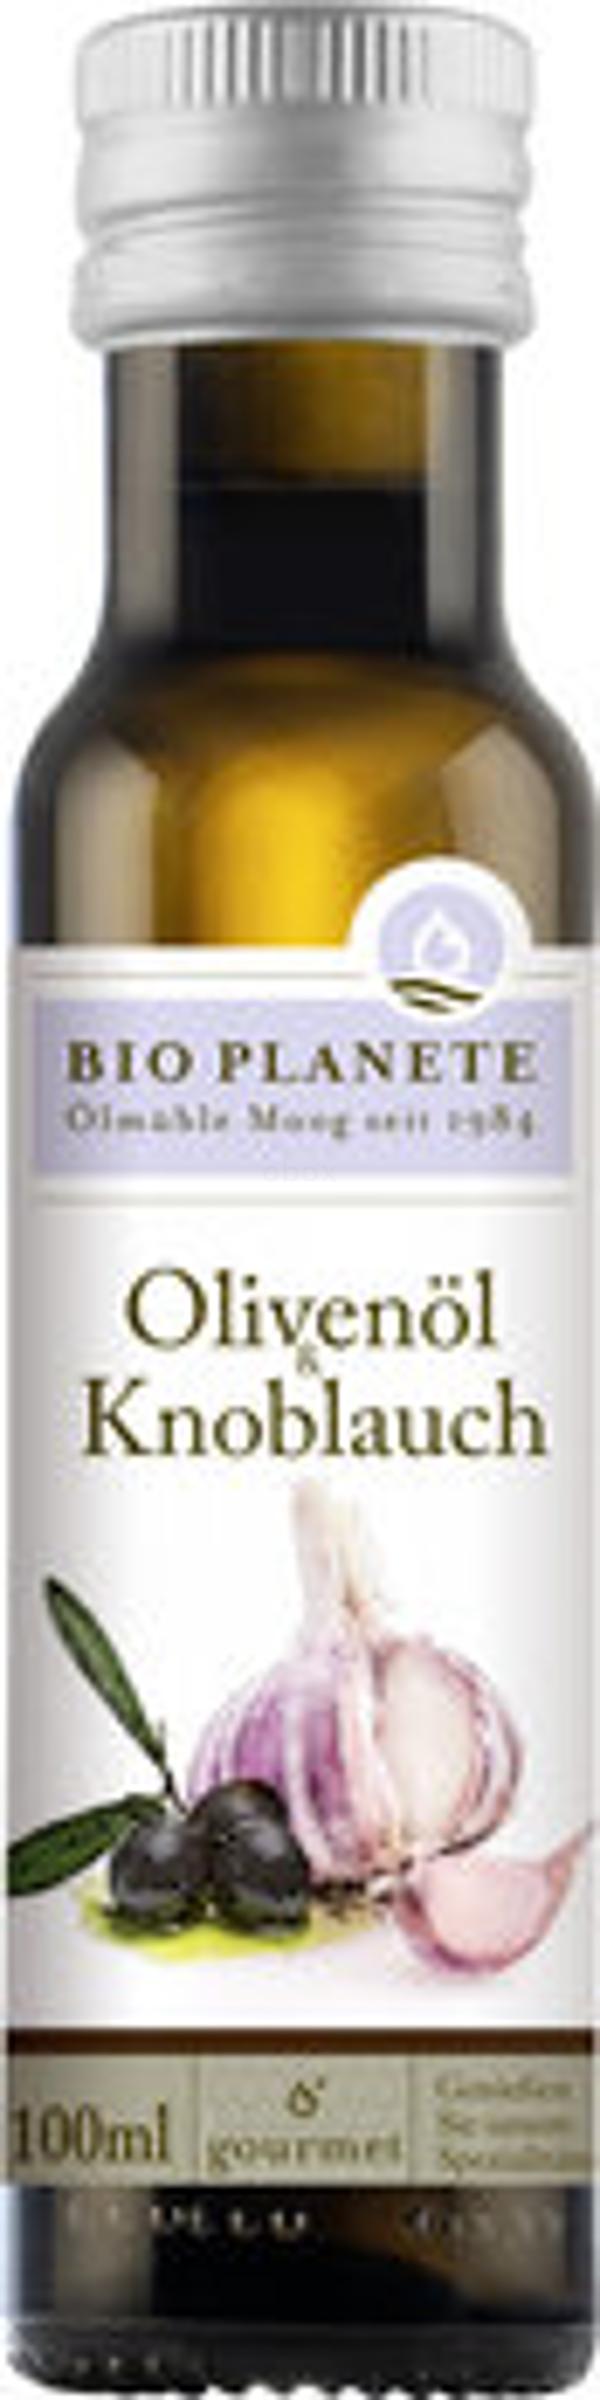 Produktfoto zu Olivenöl mit Knoblauch